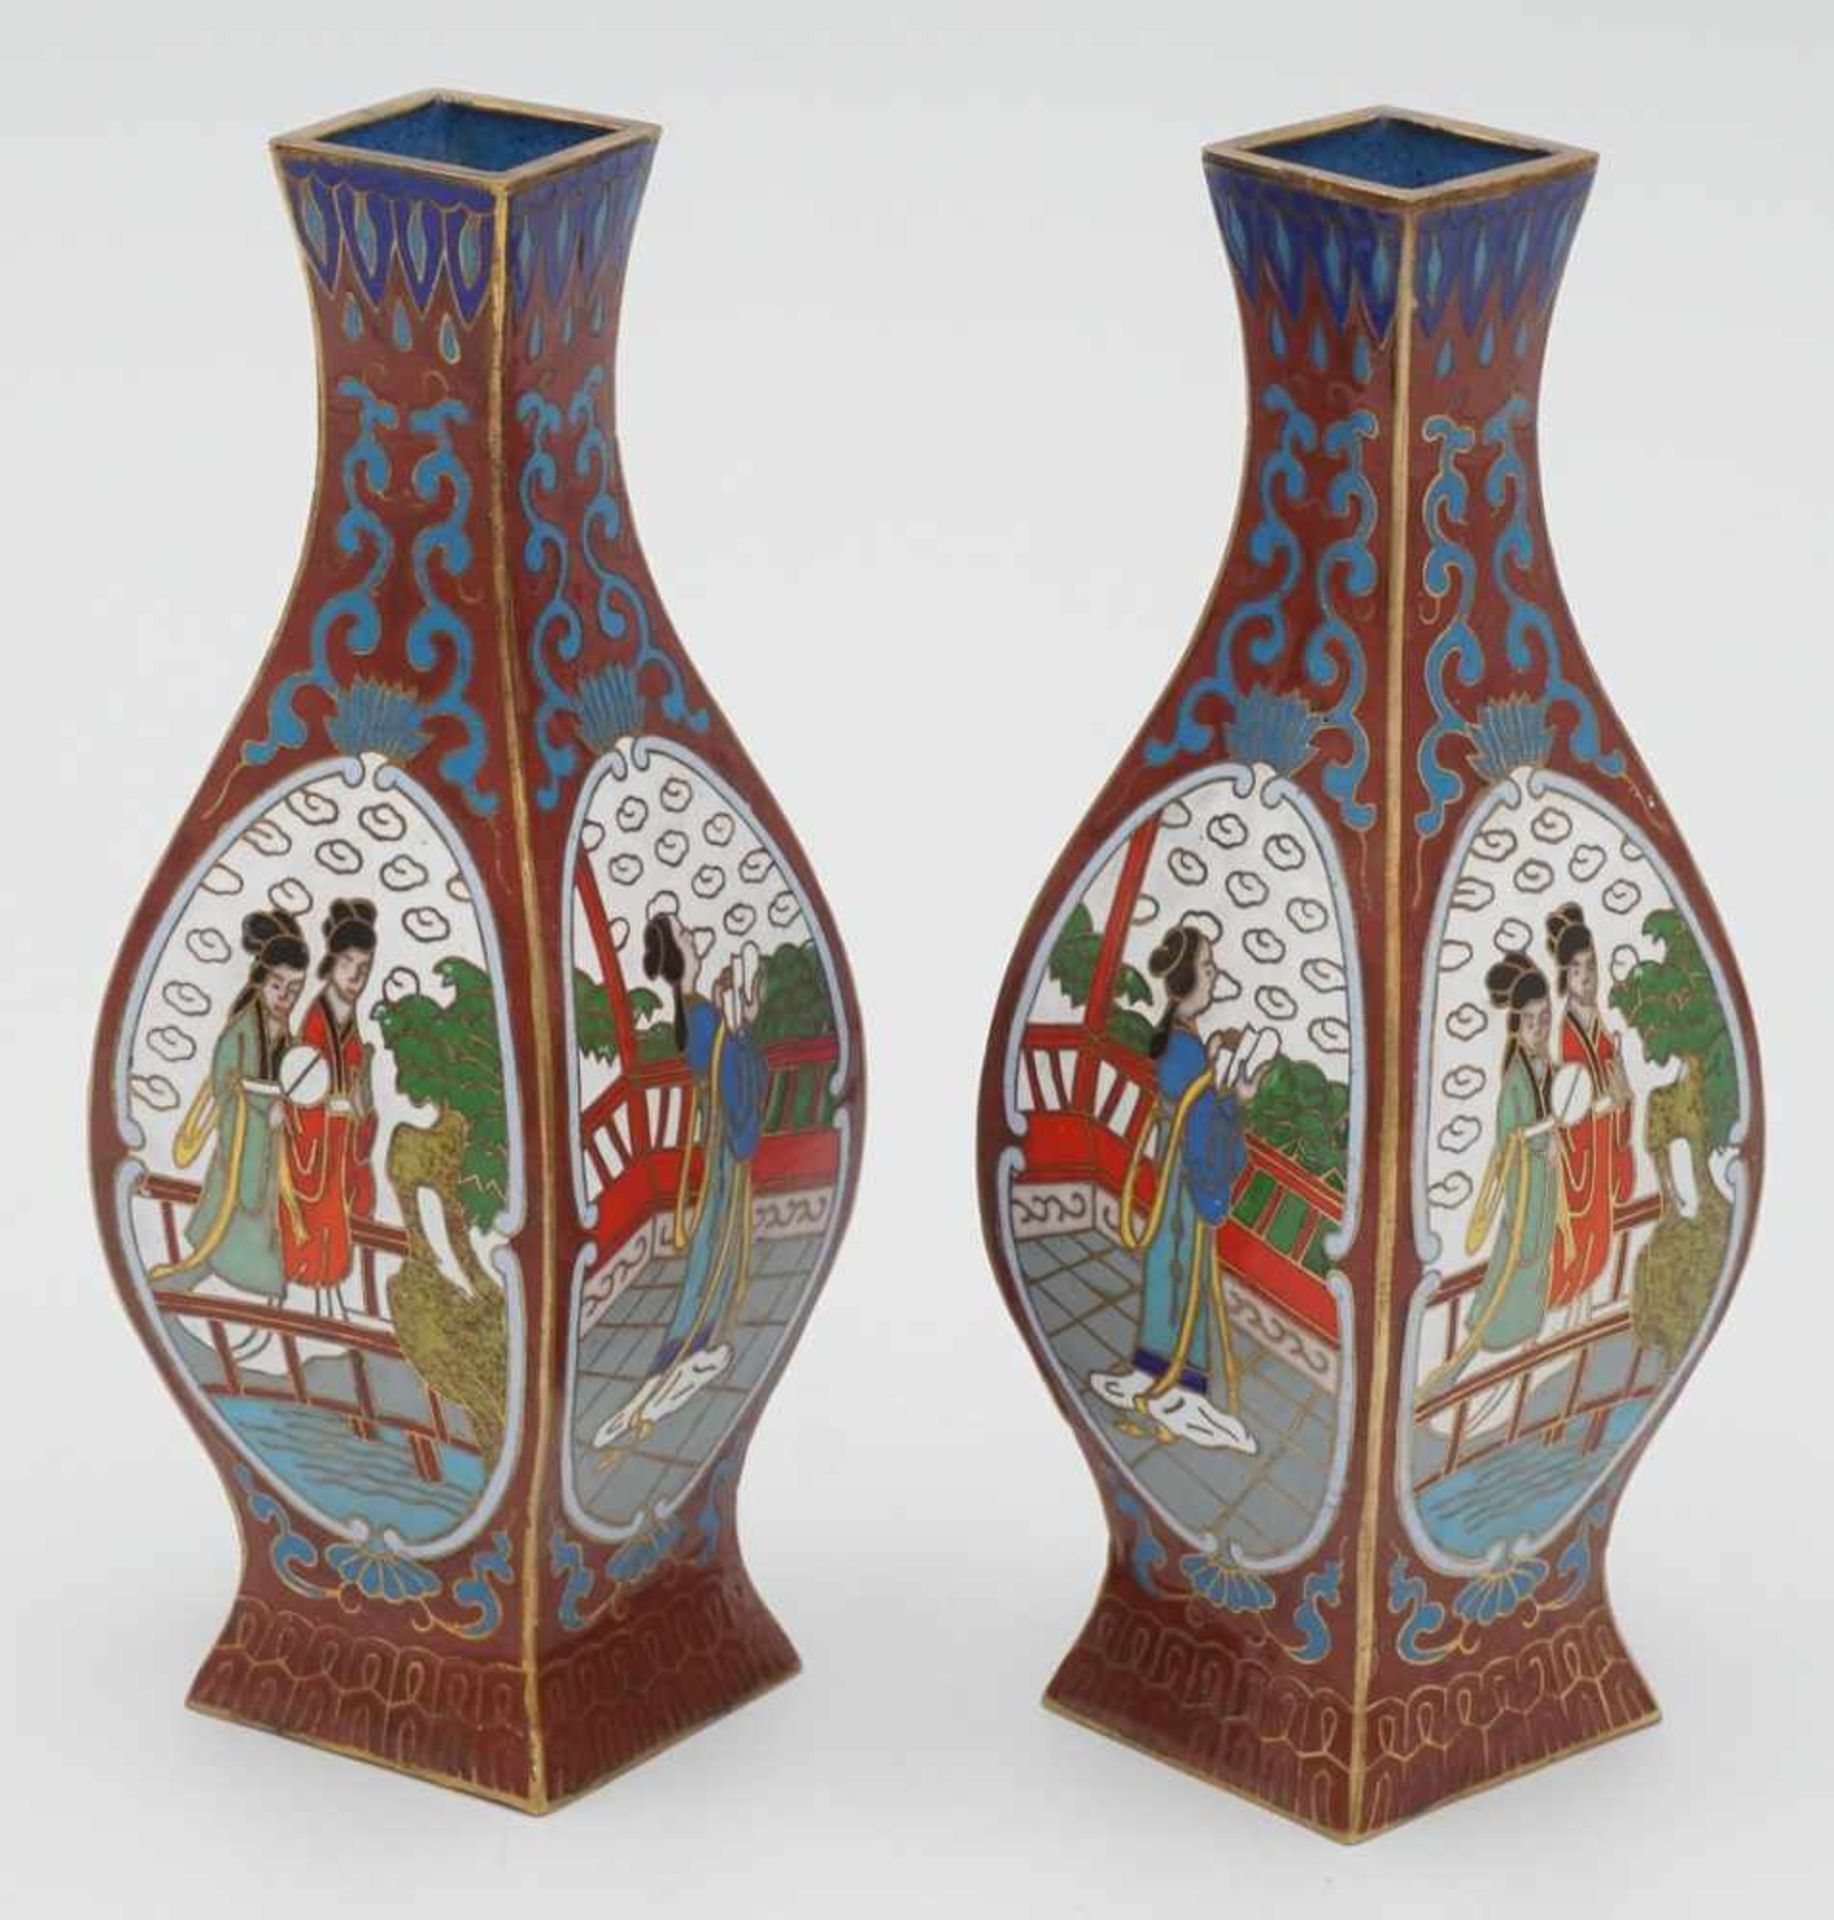 Zwei kleine Cloisonné Vasen, China, 20. Jh.